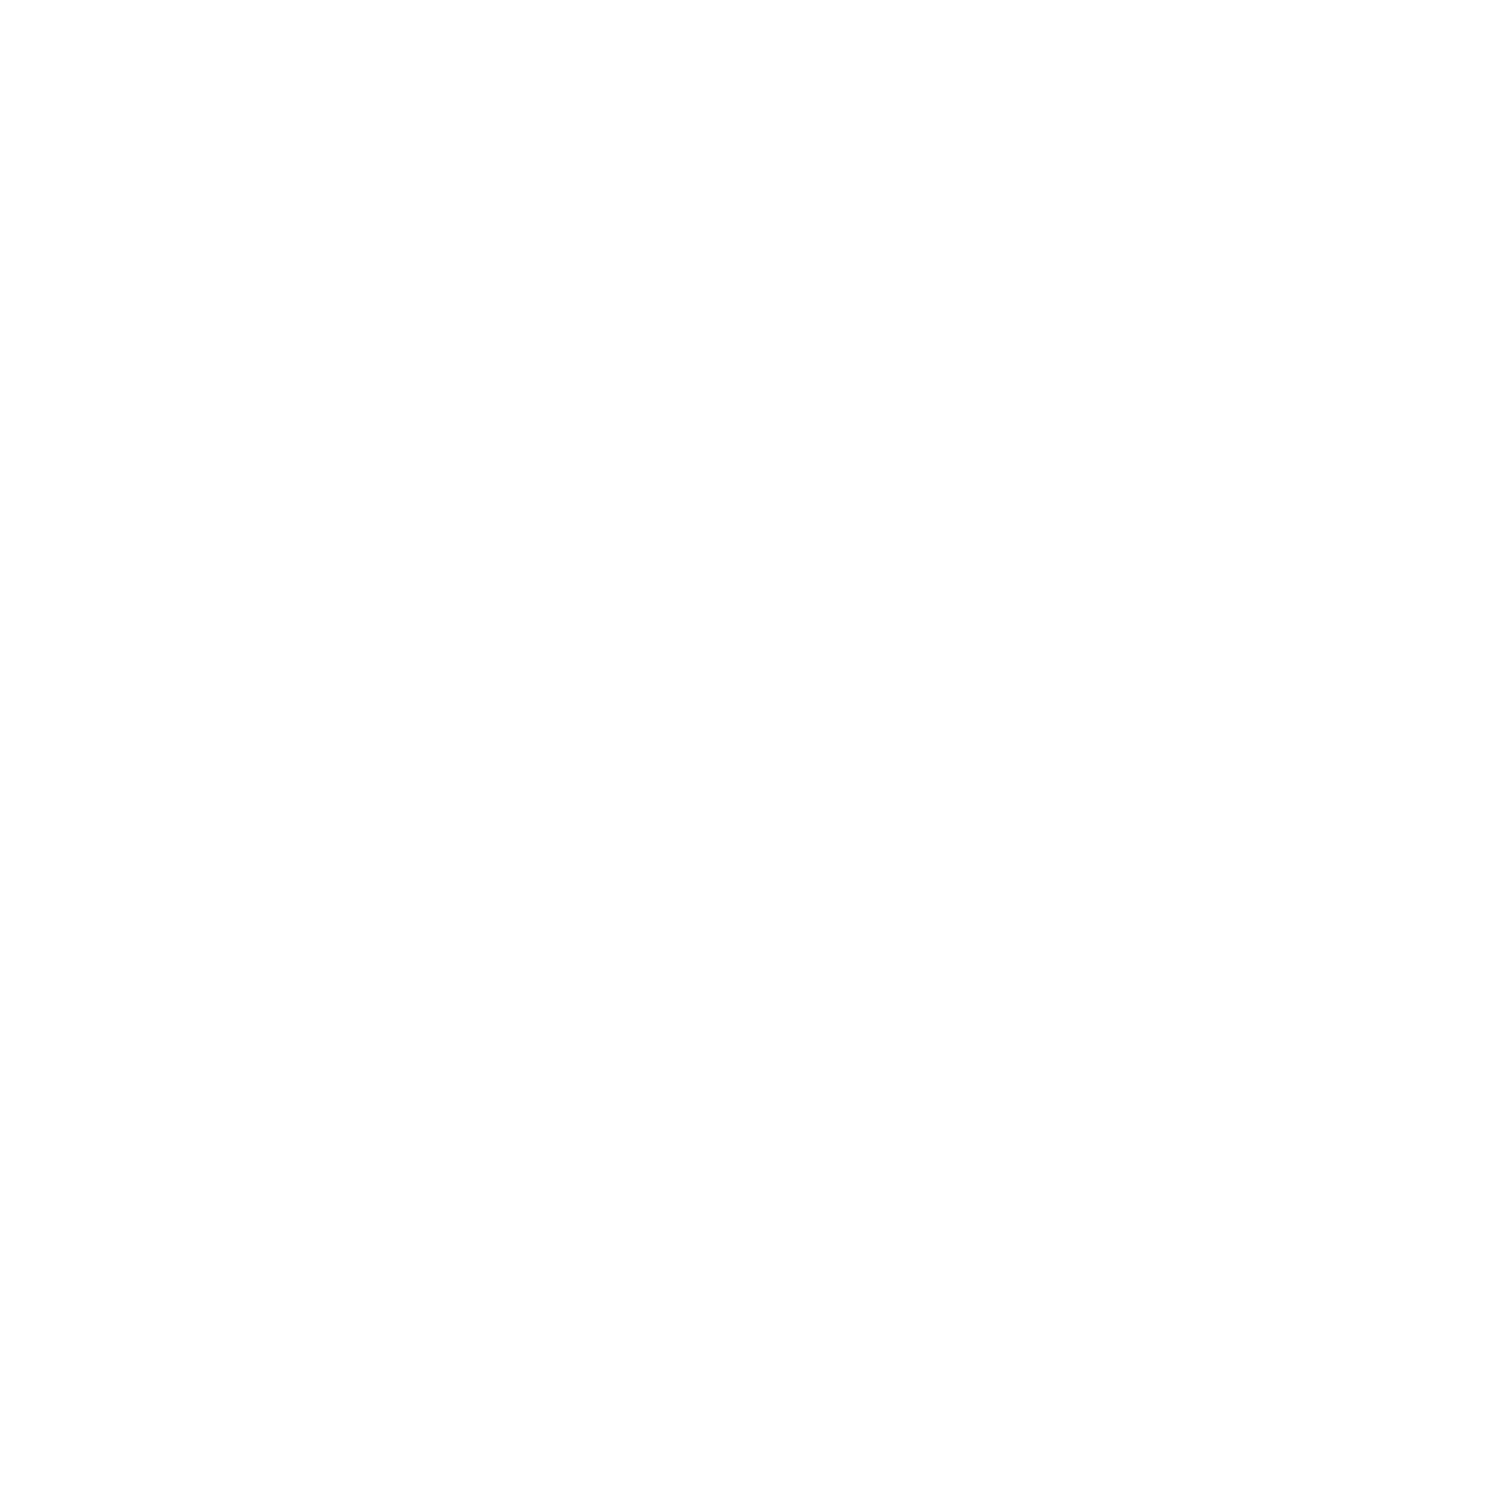 Side-Bar-01.png